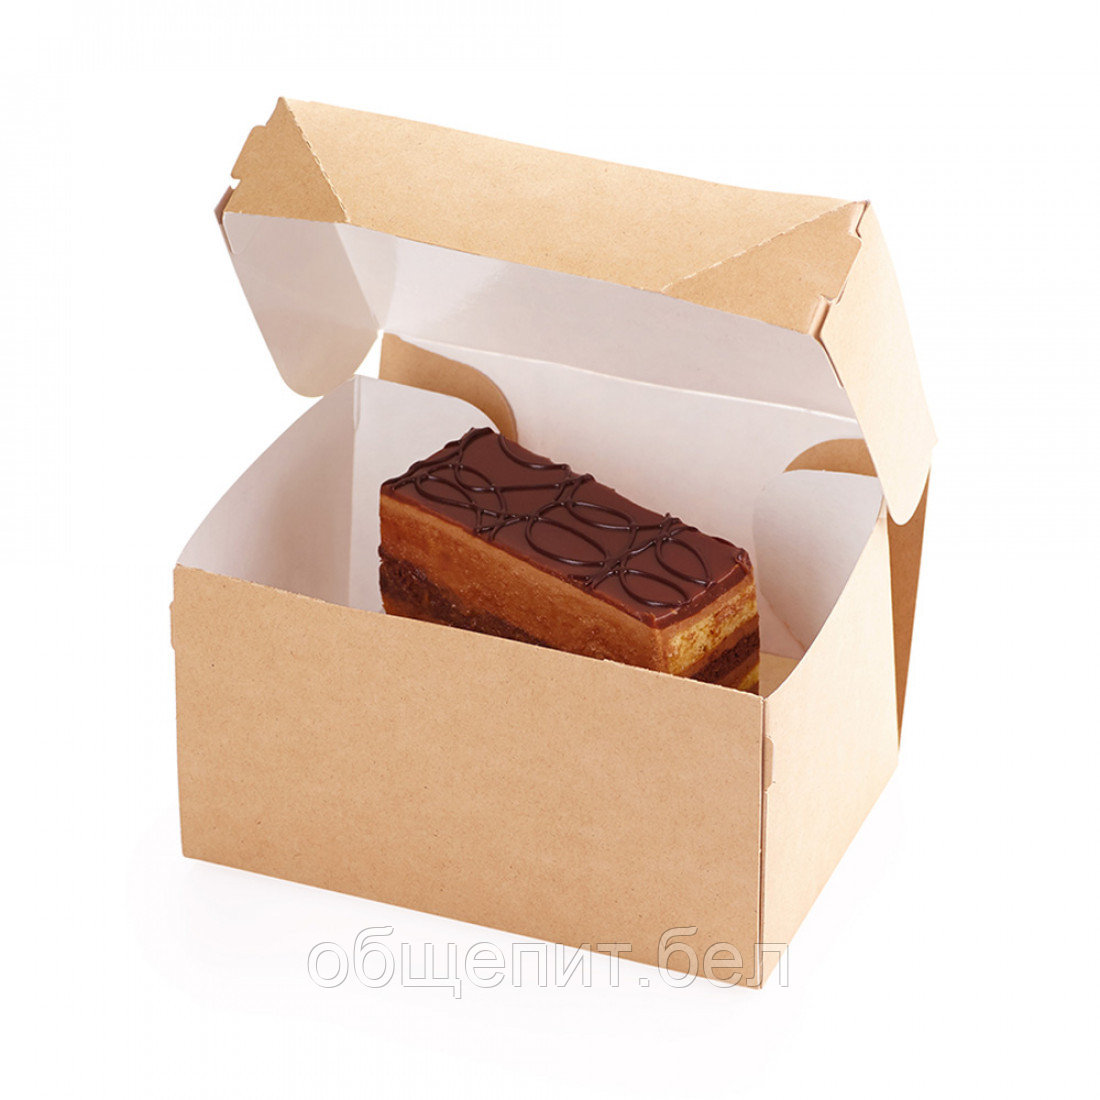 Коробка для десерта без окна 1200 мл CANDYBOX1200 (200шт./кор.)